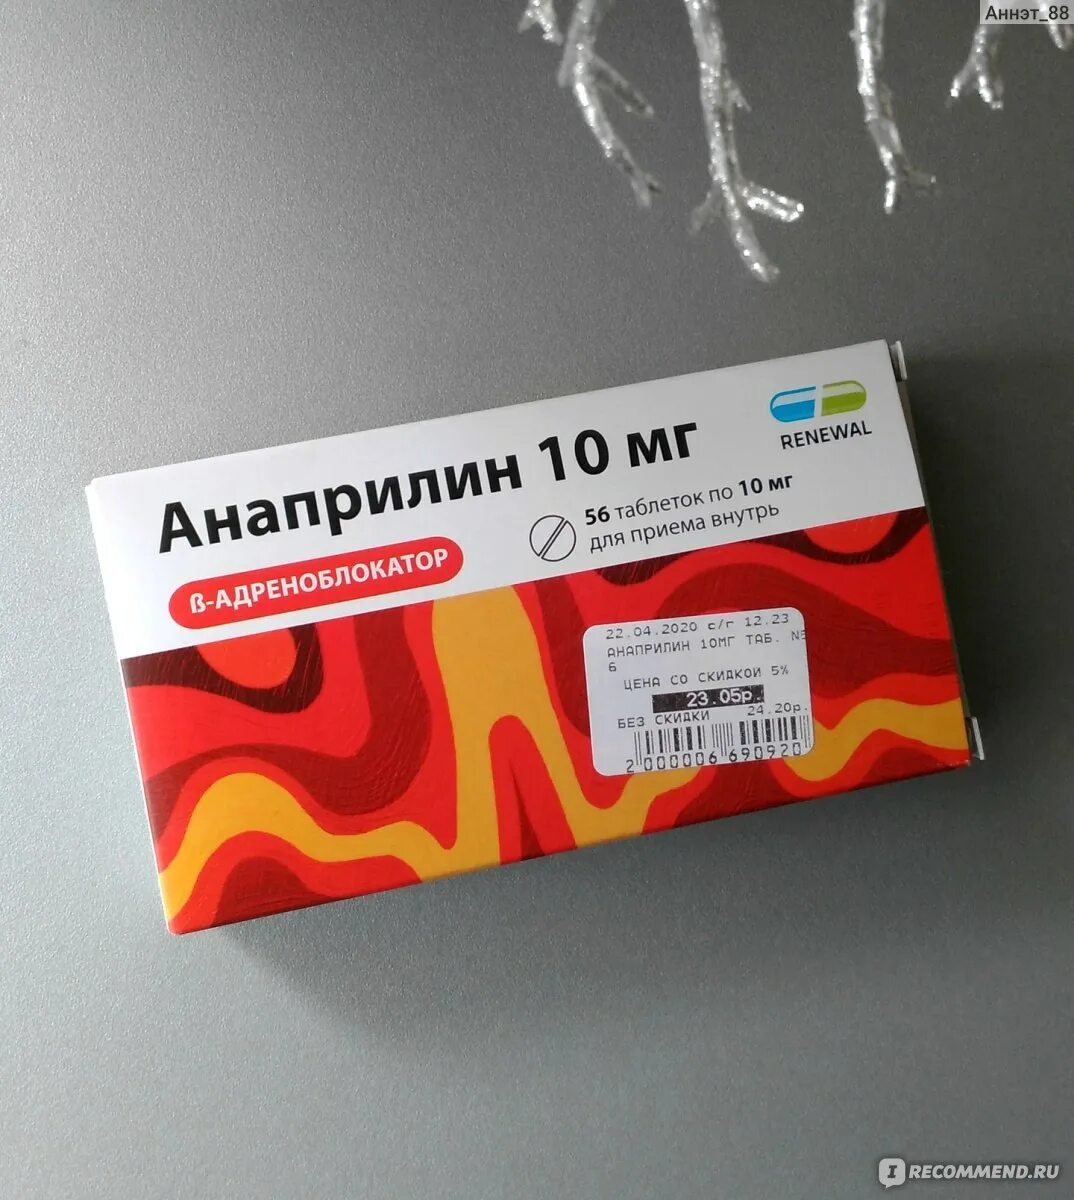 Анаприлин реневал 10 мг. Анаприлин таблетки 10 мг. Анаприлин 40 реневал. Пропранолол анаприлин.